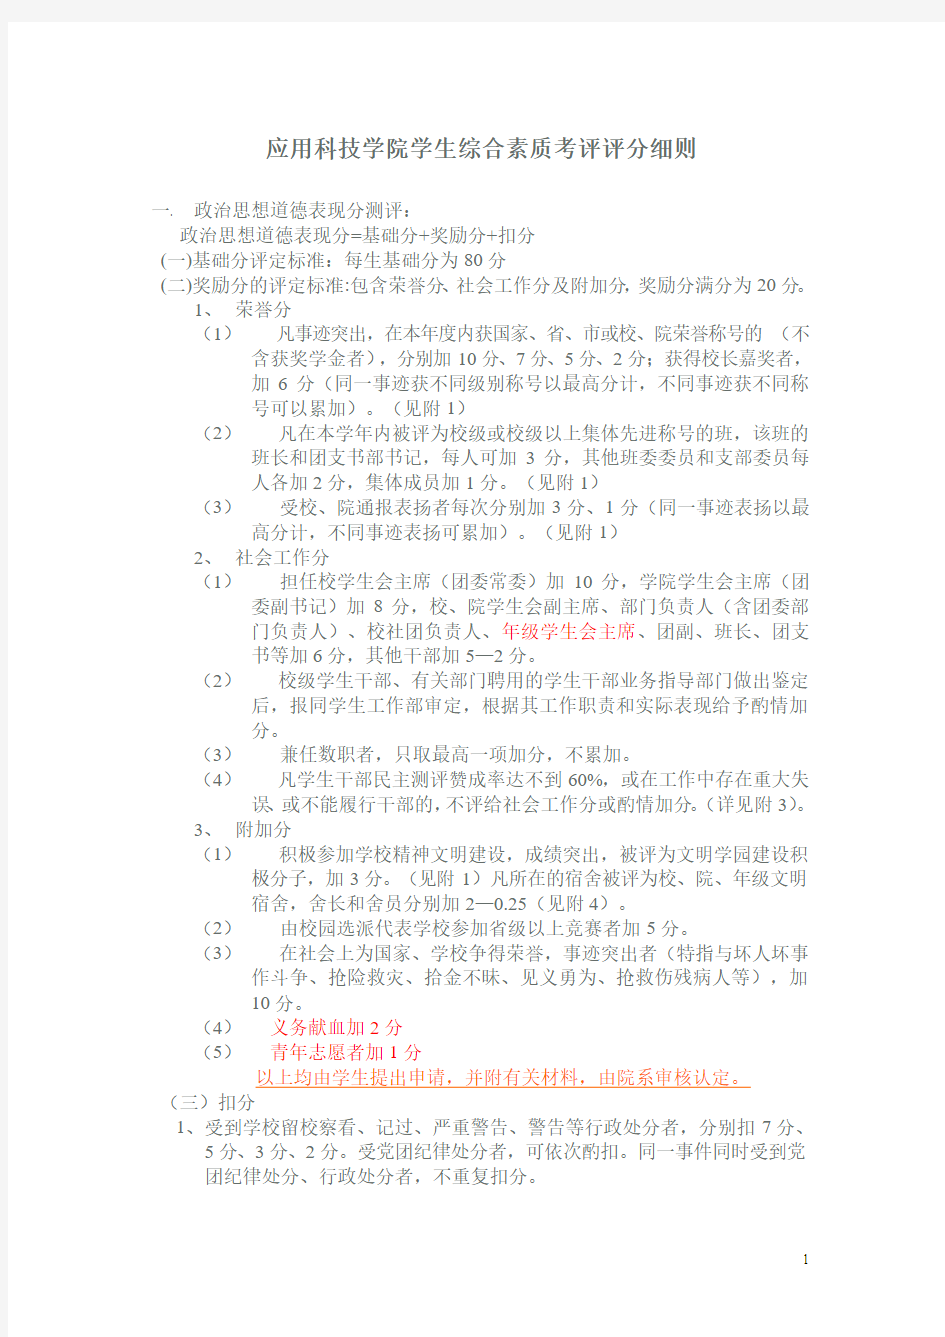 福建师范大学学年综合考评细则(2013)